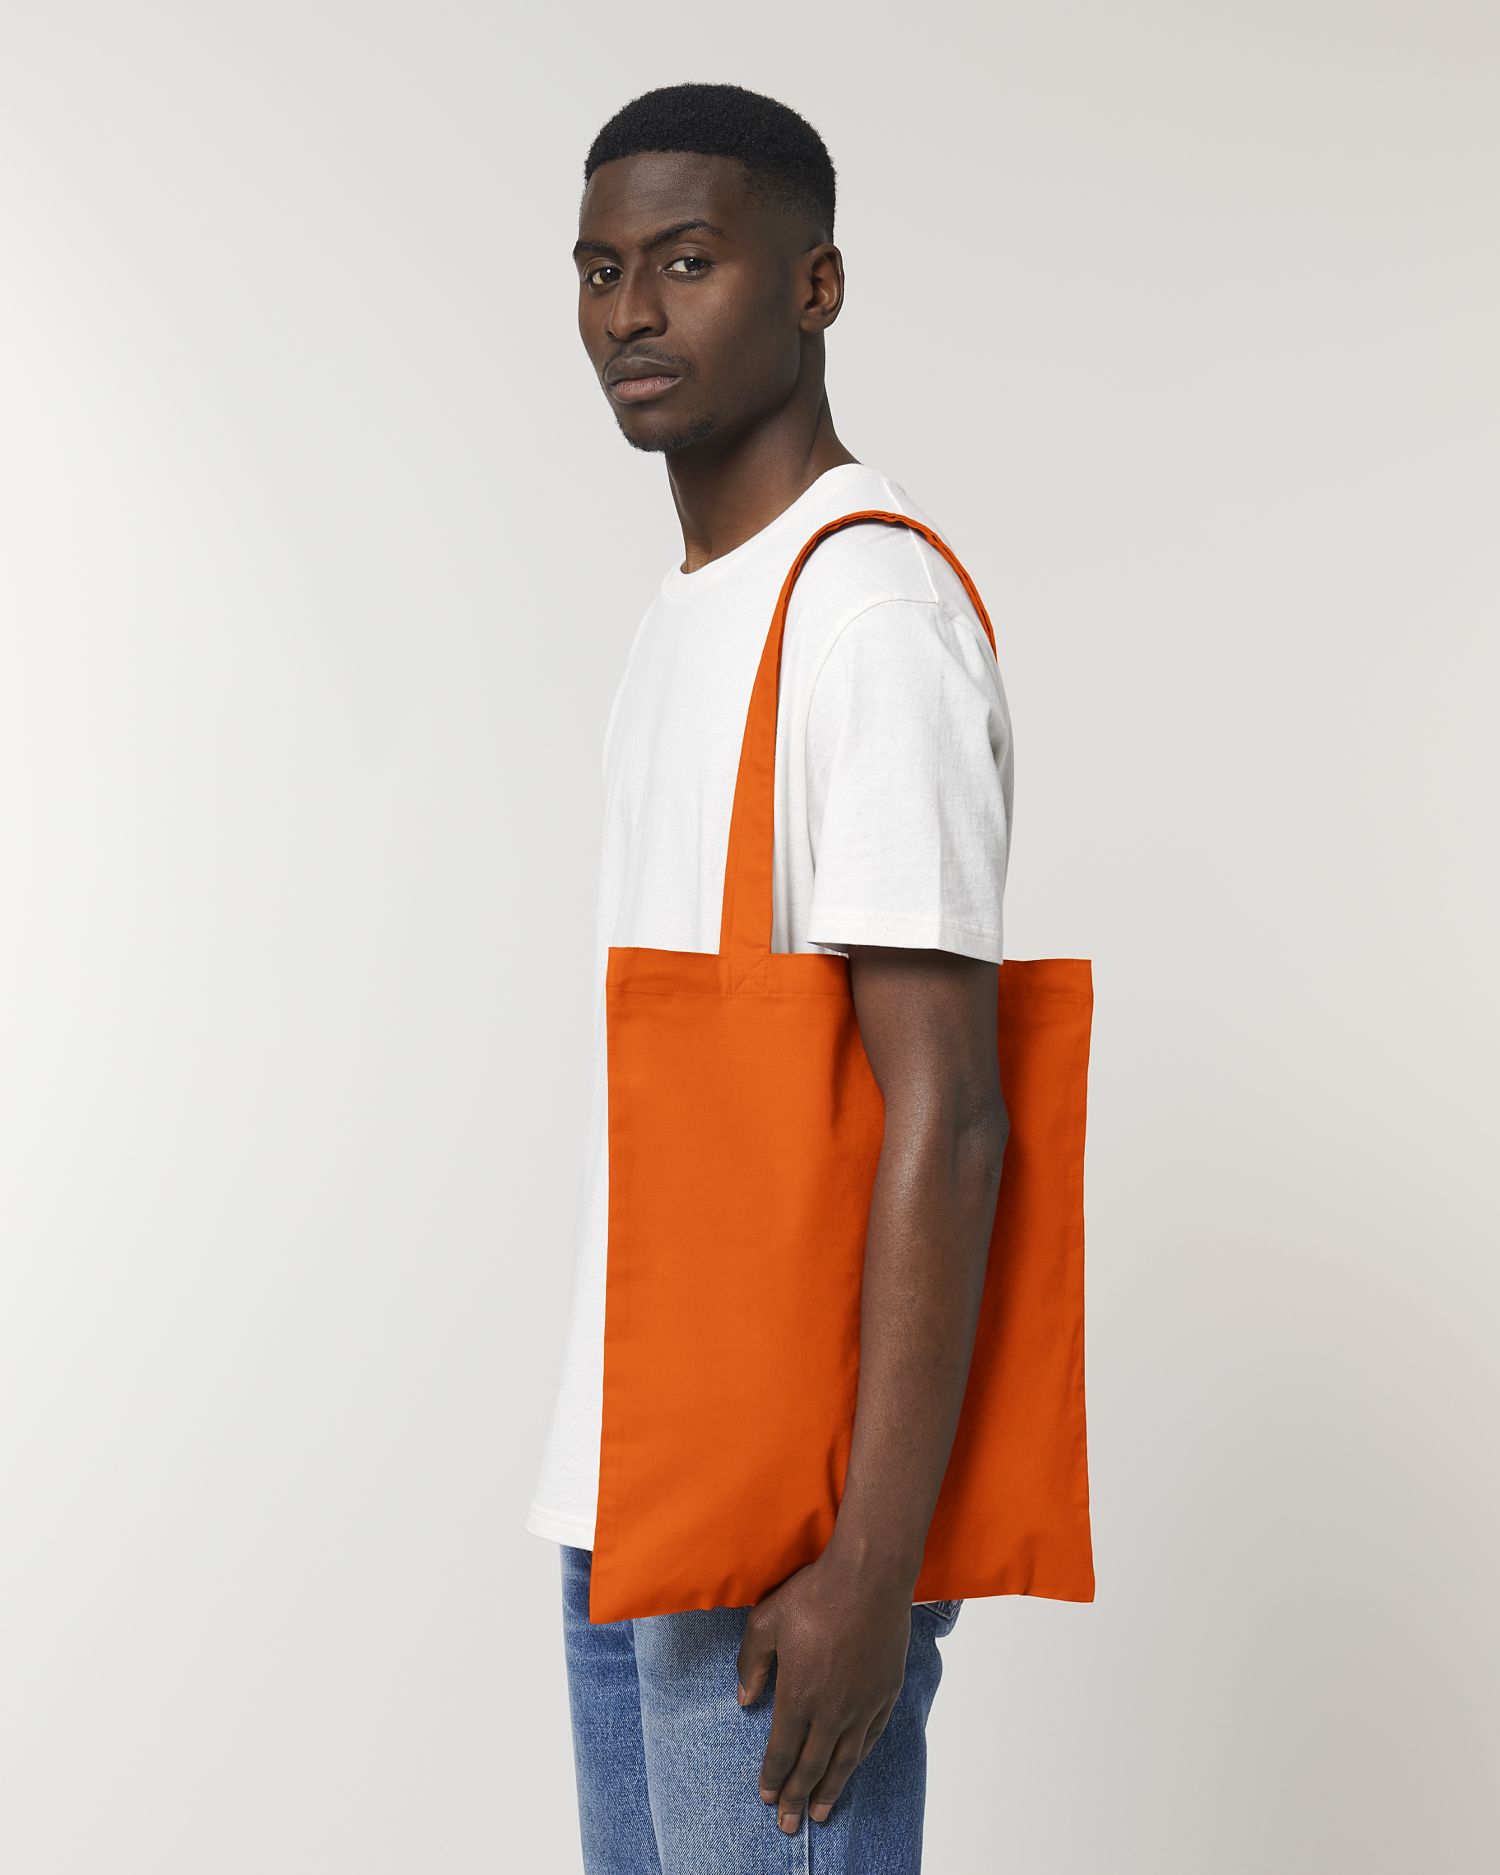  Light Tote Bag in Farbe Bright Orange